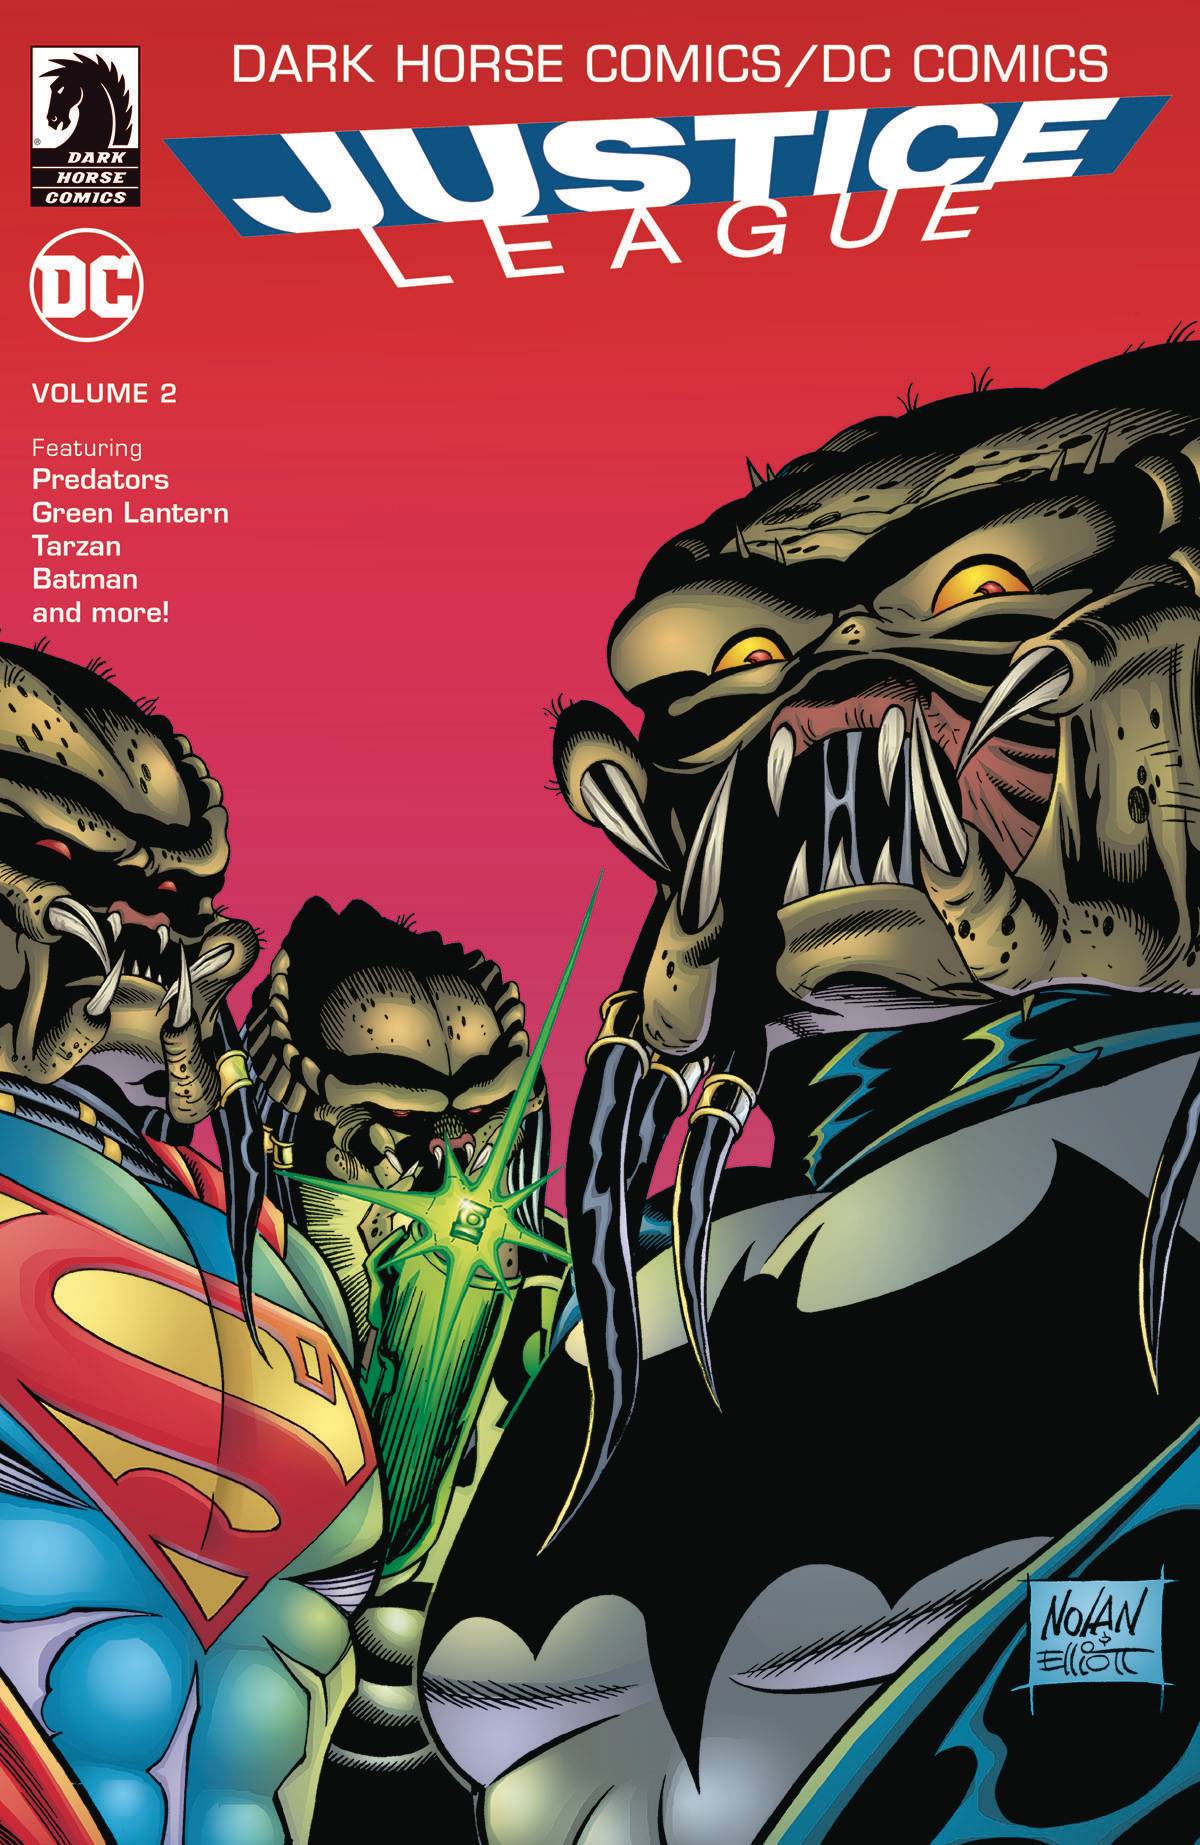 DC Comics Dark Horse Comics Justice League Graphic Novel Volume 2